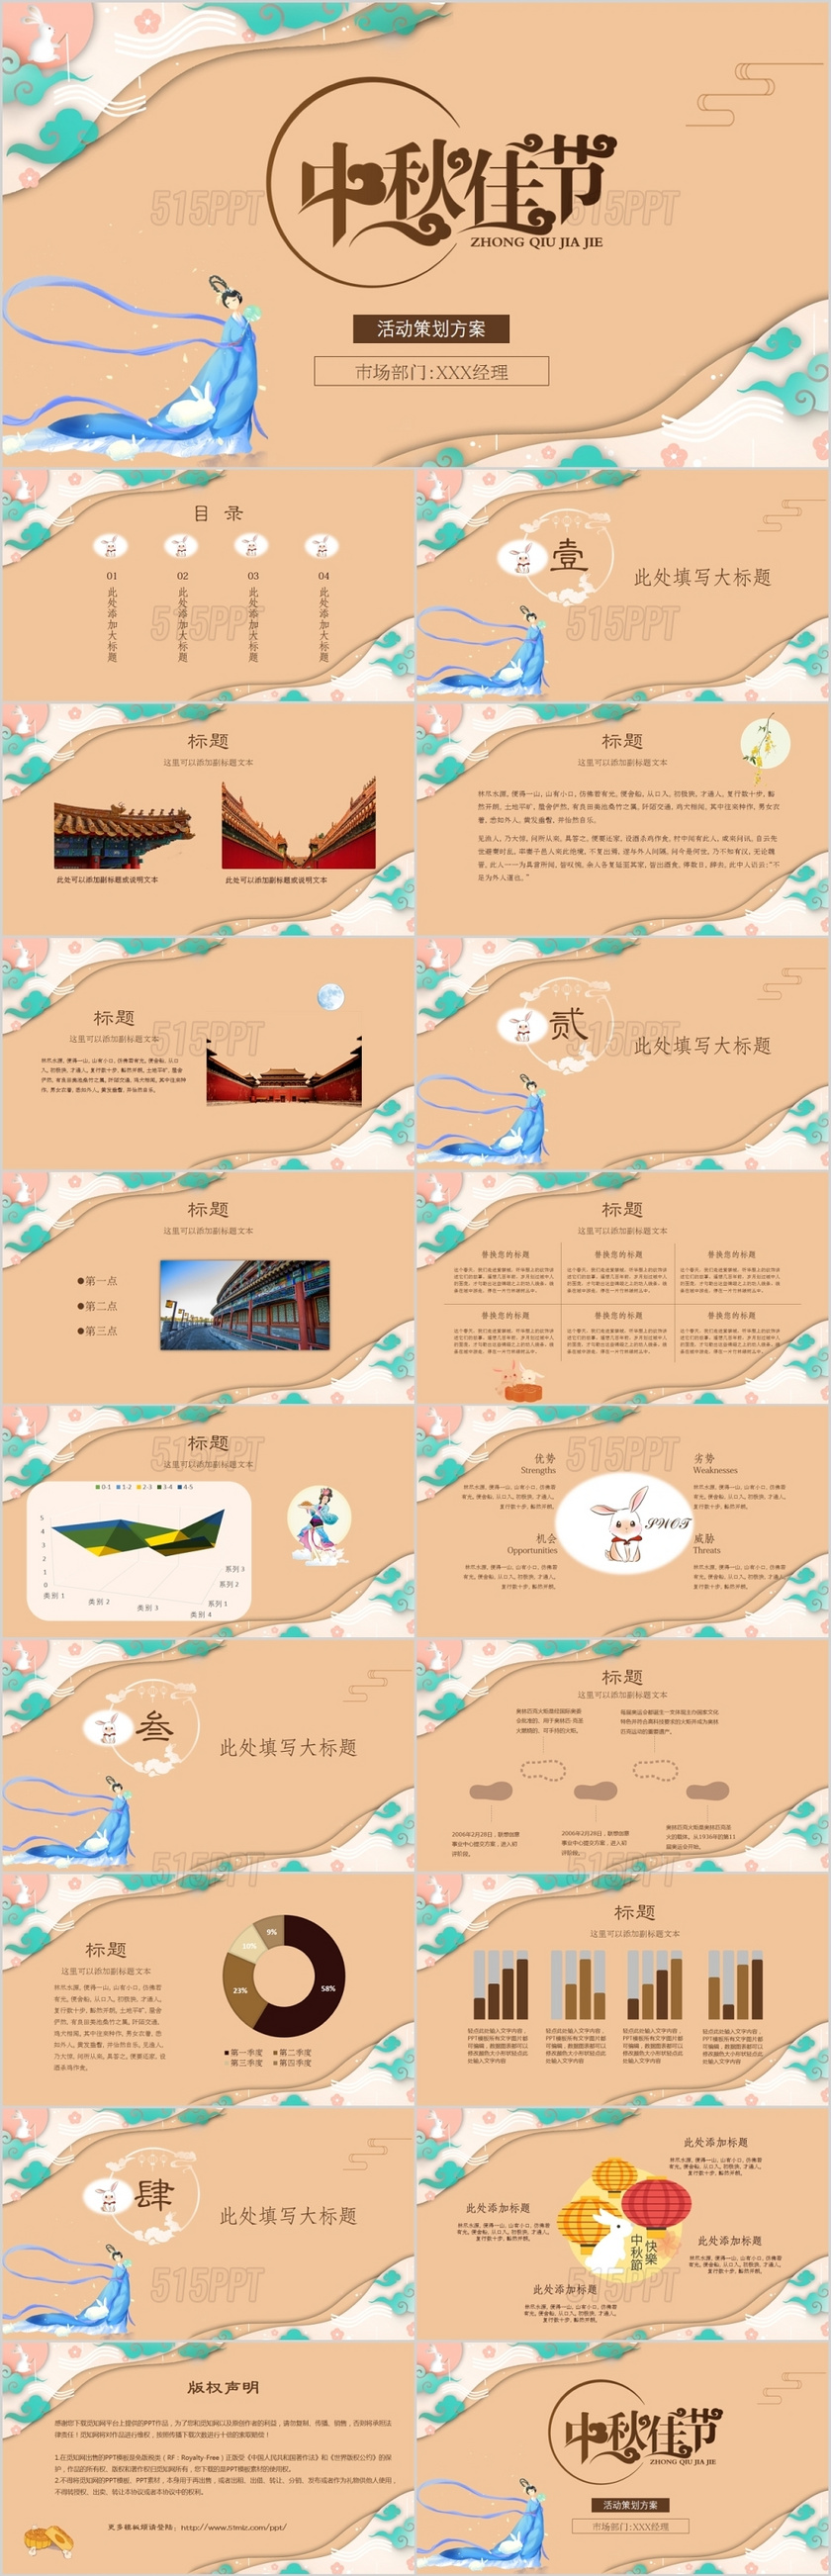 浅桔古典风中国传统节日中秋节活动策划方案主题PPT模板